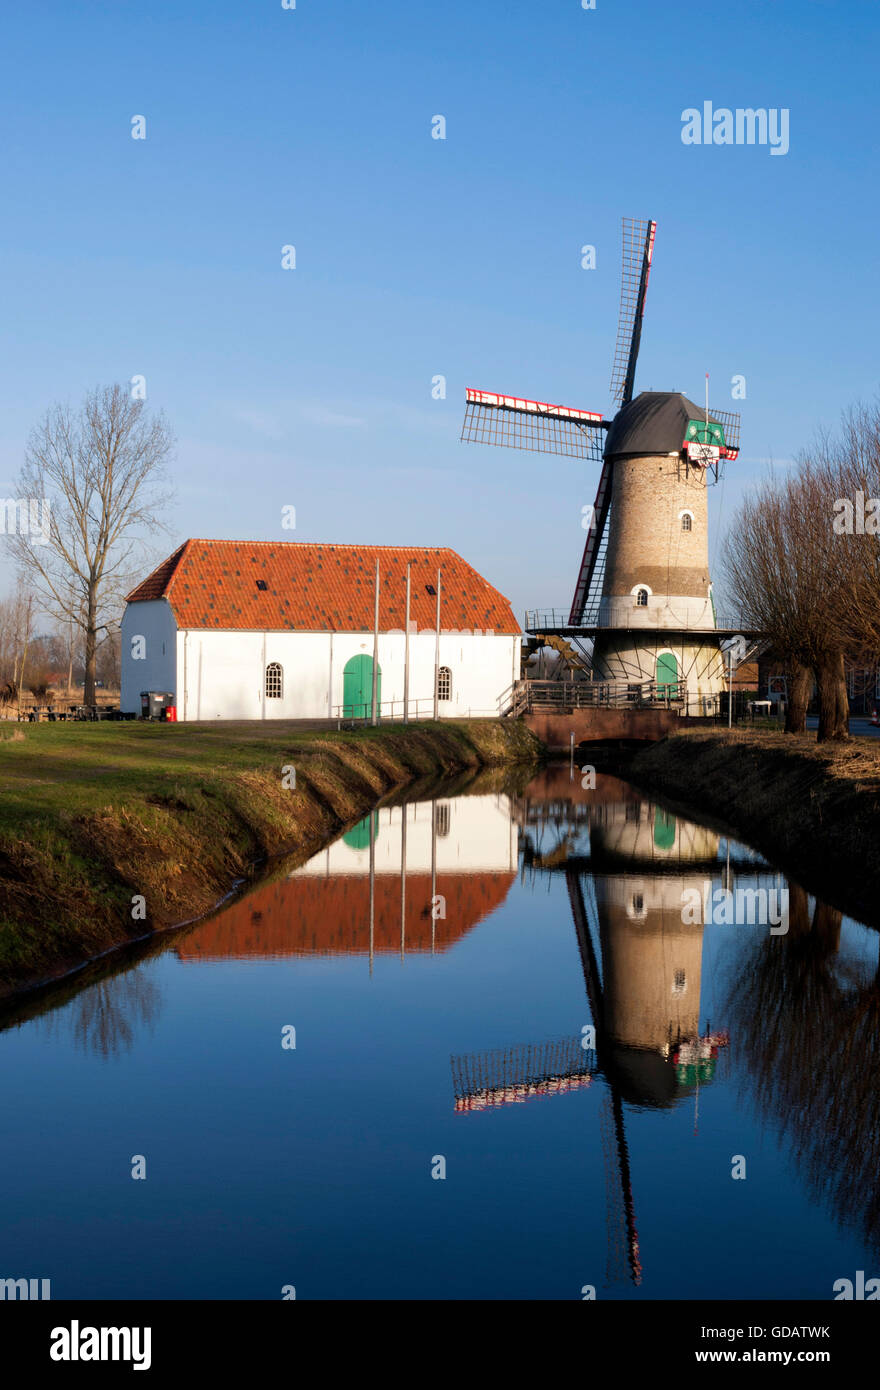 Die Kildonkse Mühle am Fluss Brabantse Aa in der Nähe von Modefotografin in der niederländischen Provinz Noord-Brabant Stockfoto